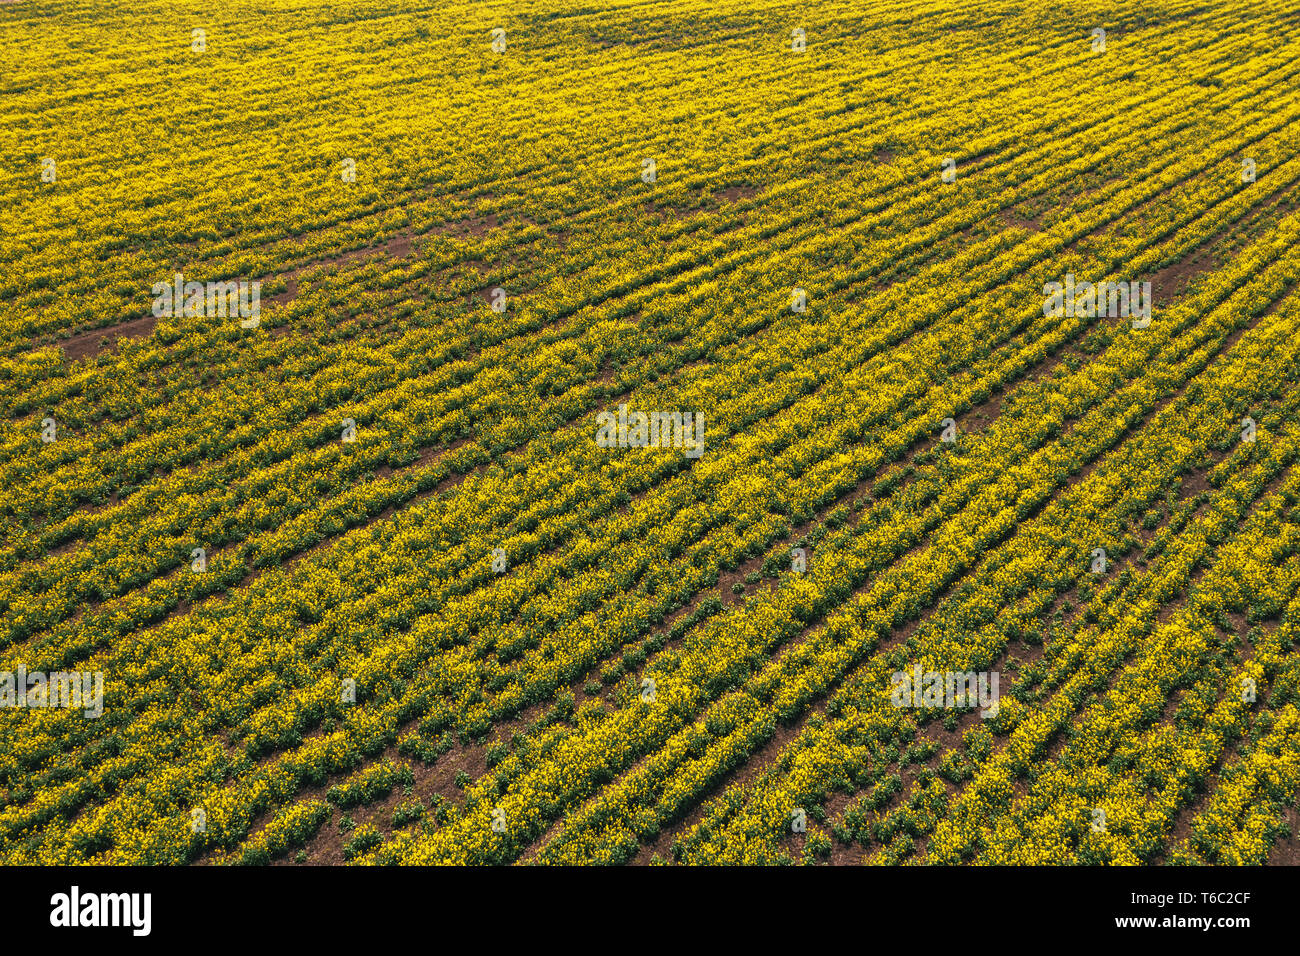 Vue aérienne du champ de colza canola en mauvais état à cause de la sécheresse, l'aridité du climat et de la saison Banque D'Images